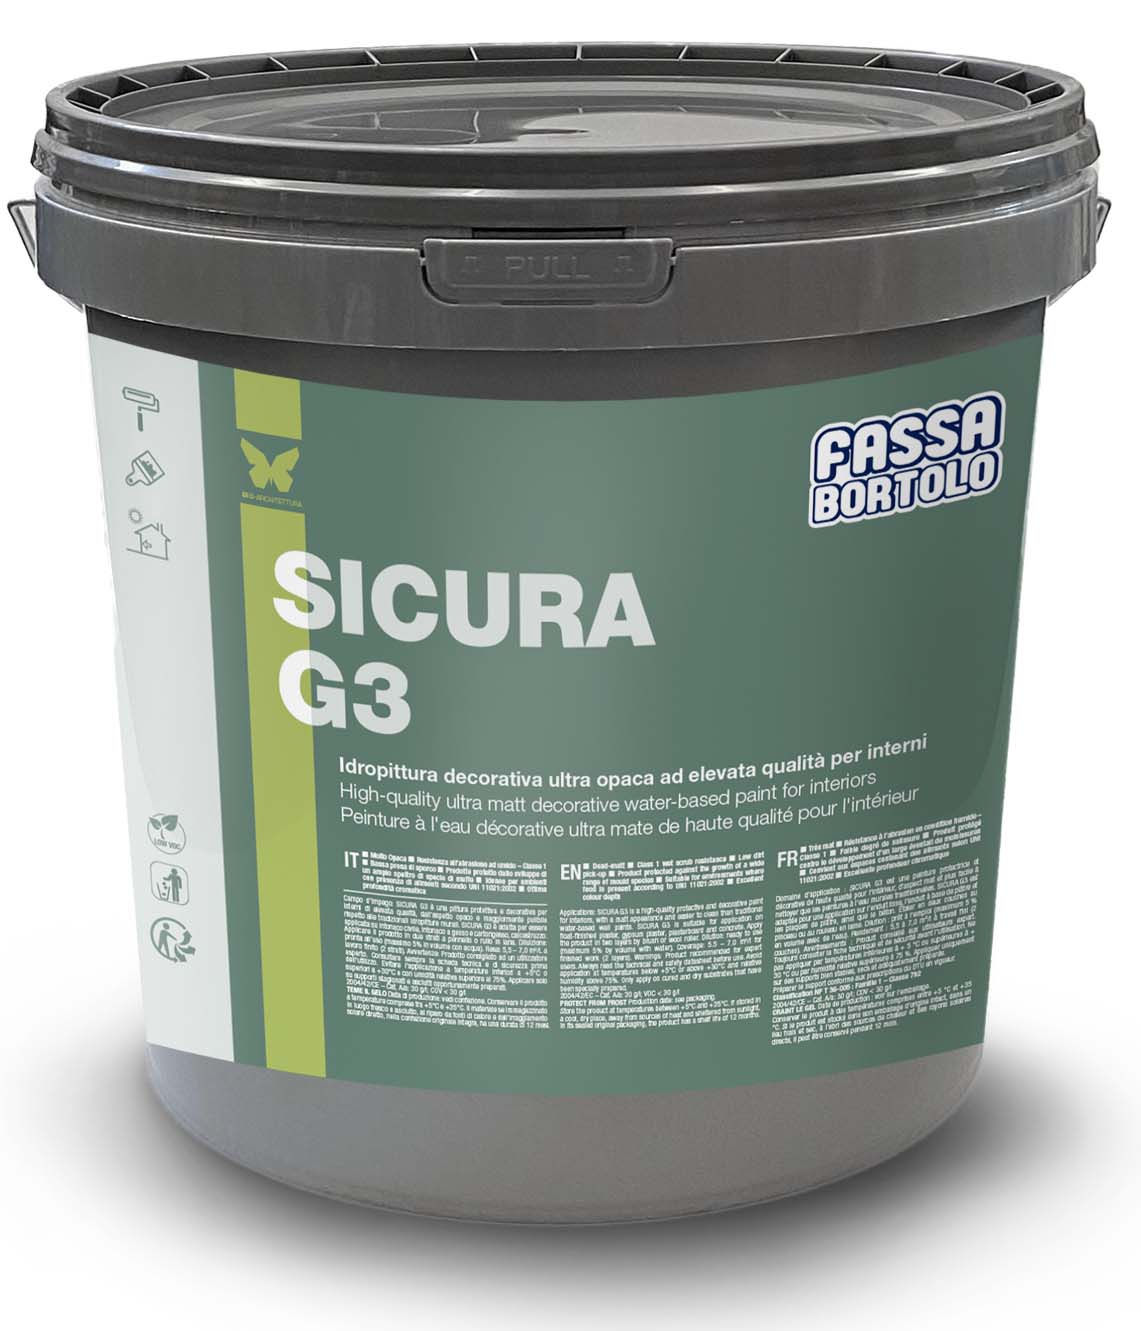 SICURA G3: Tinta de água decorativa ultra opaca de alta qualidade para interiores